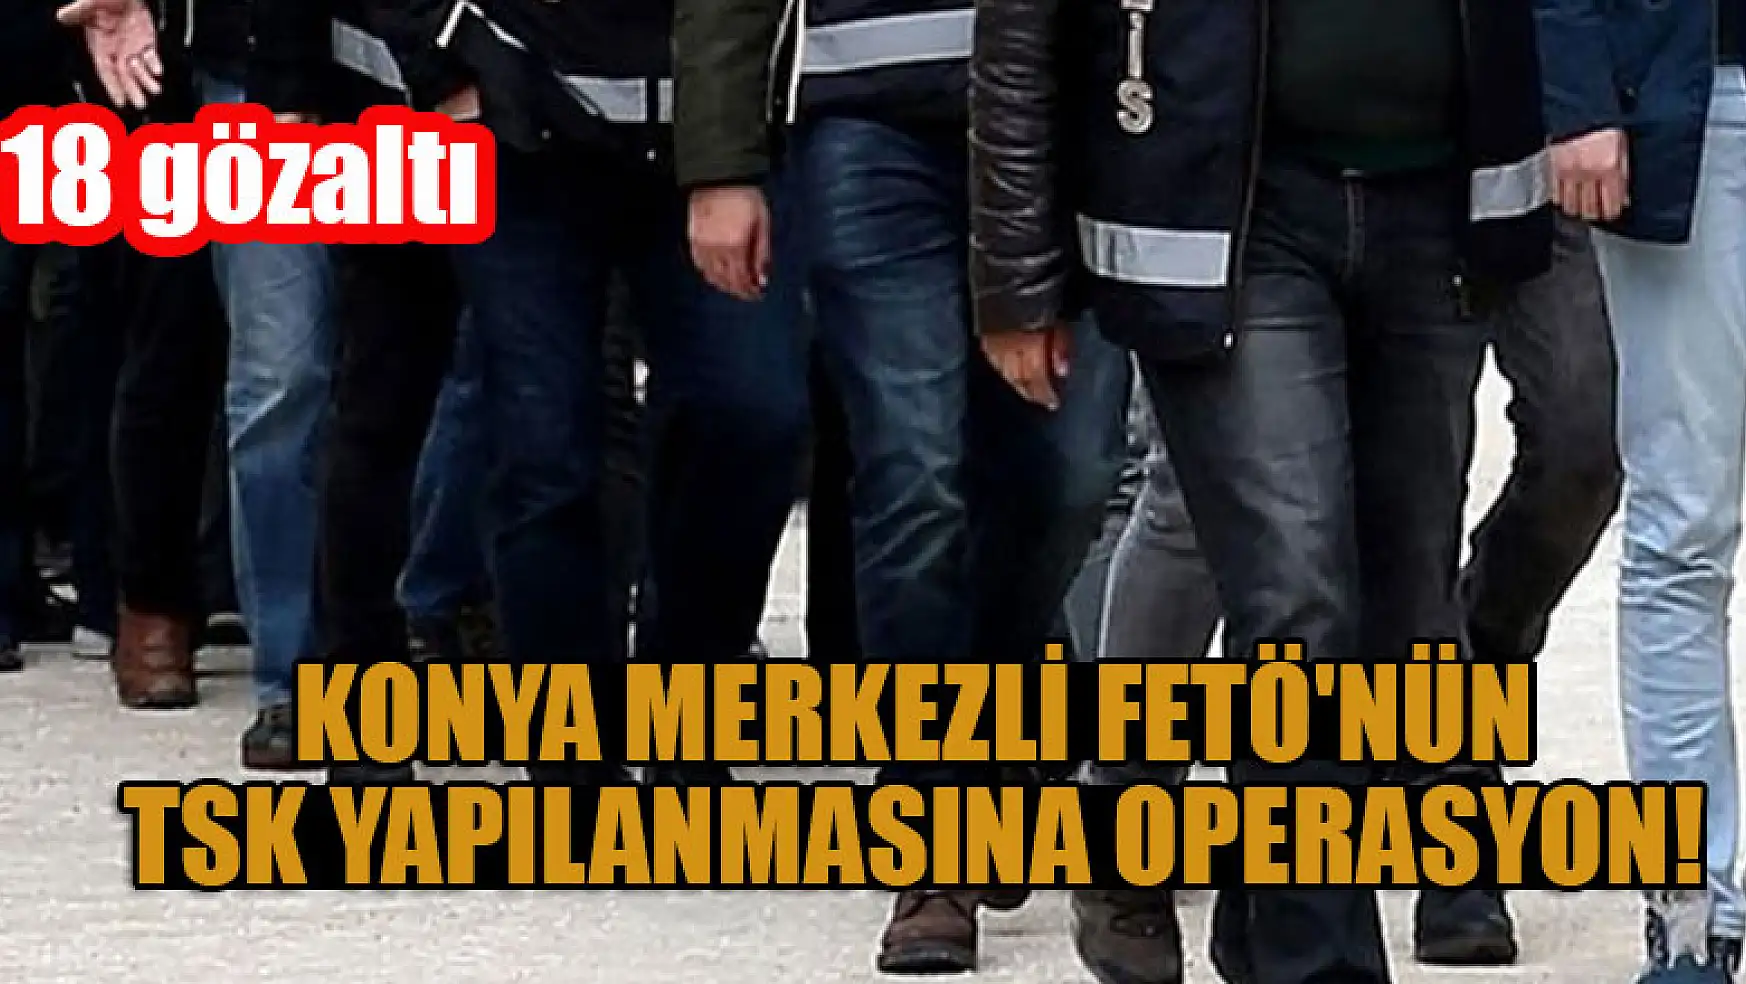 Konya merkezli FETÖ'nün TSK yapılanmasına operasyon: 18 gözaltı